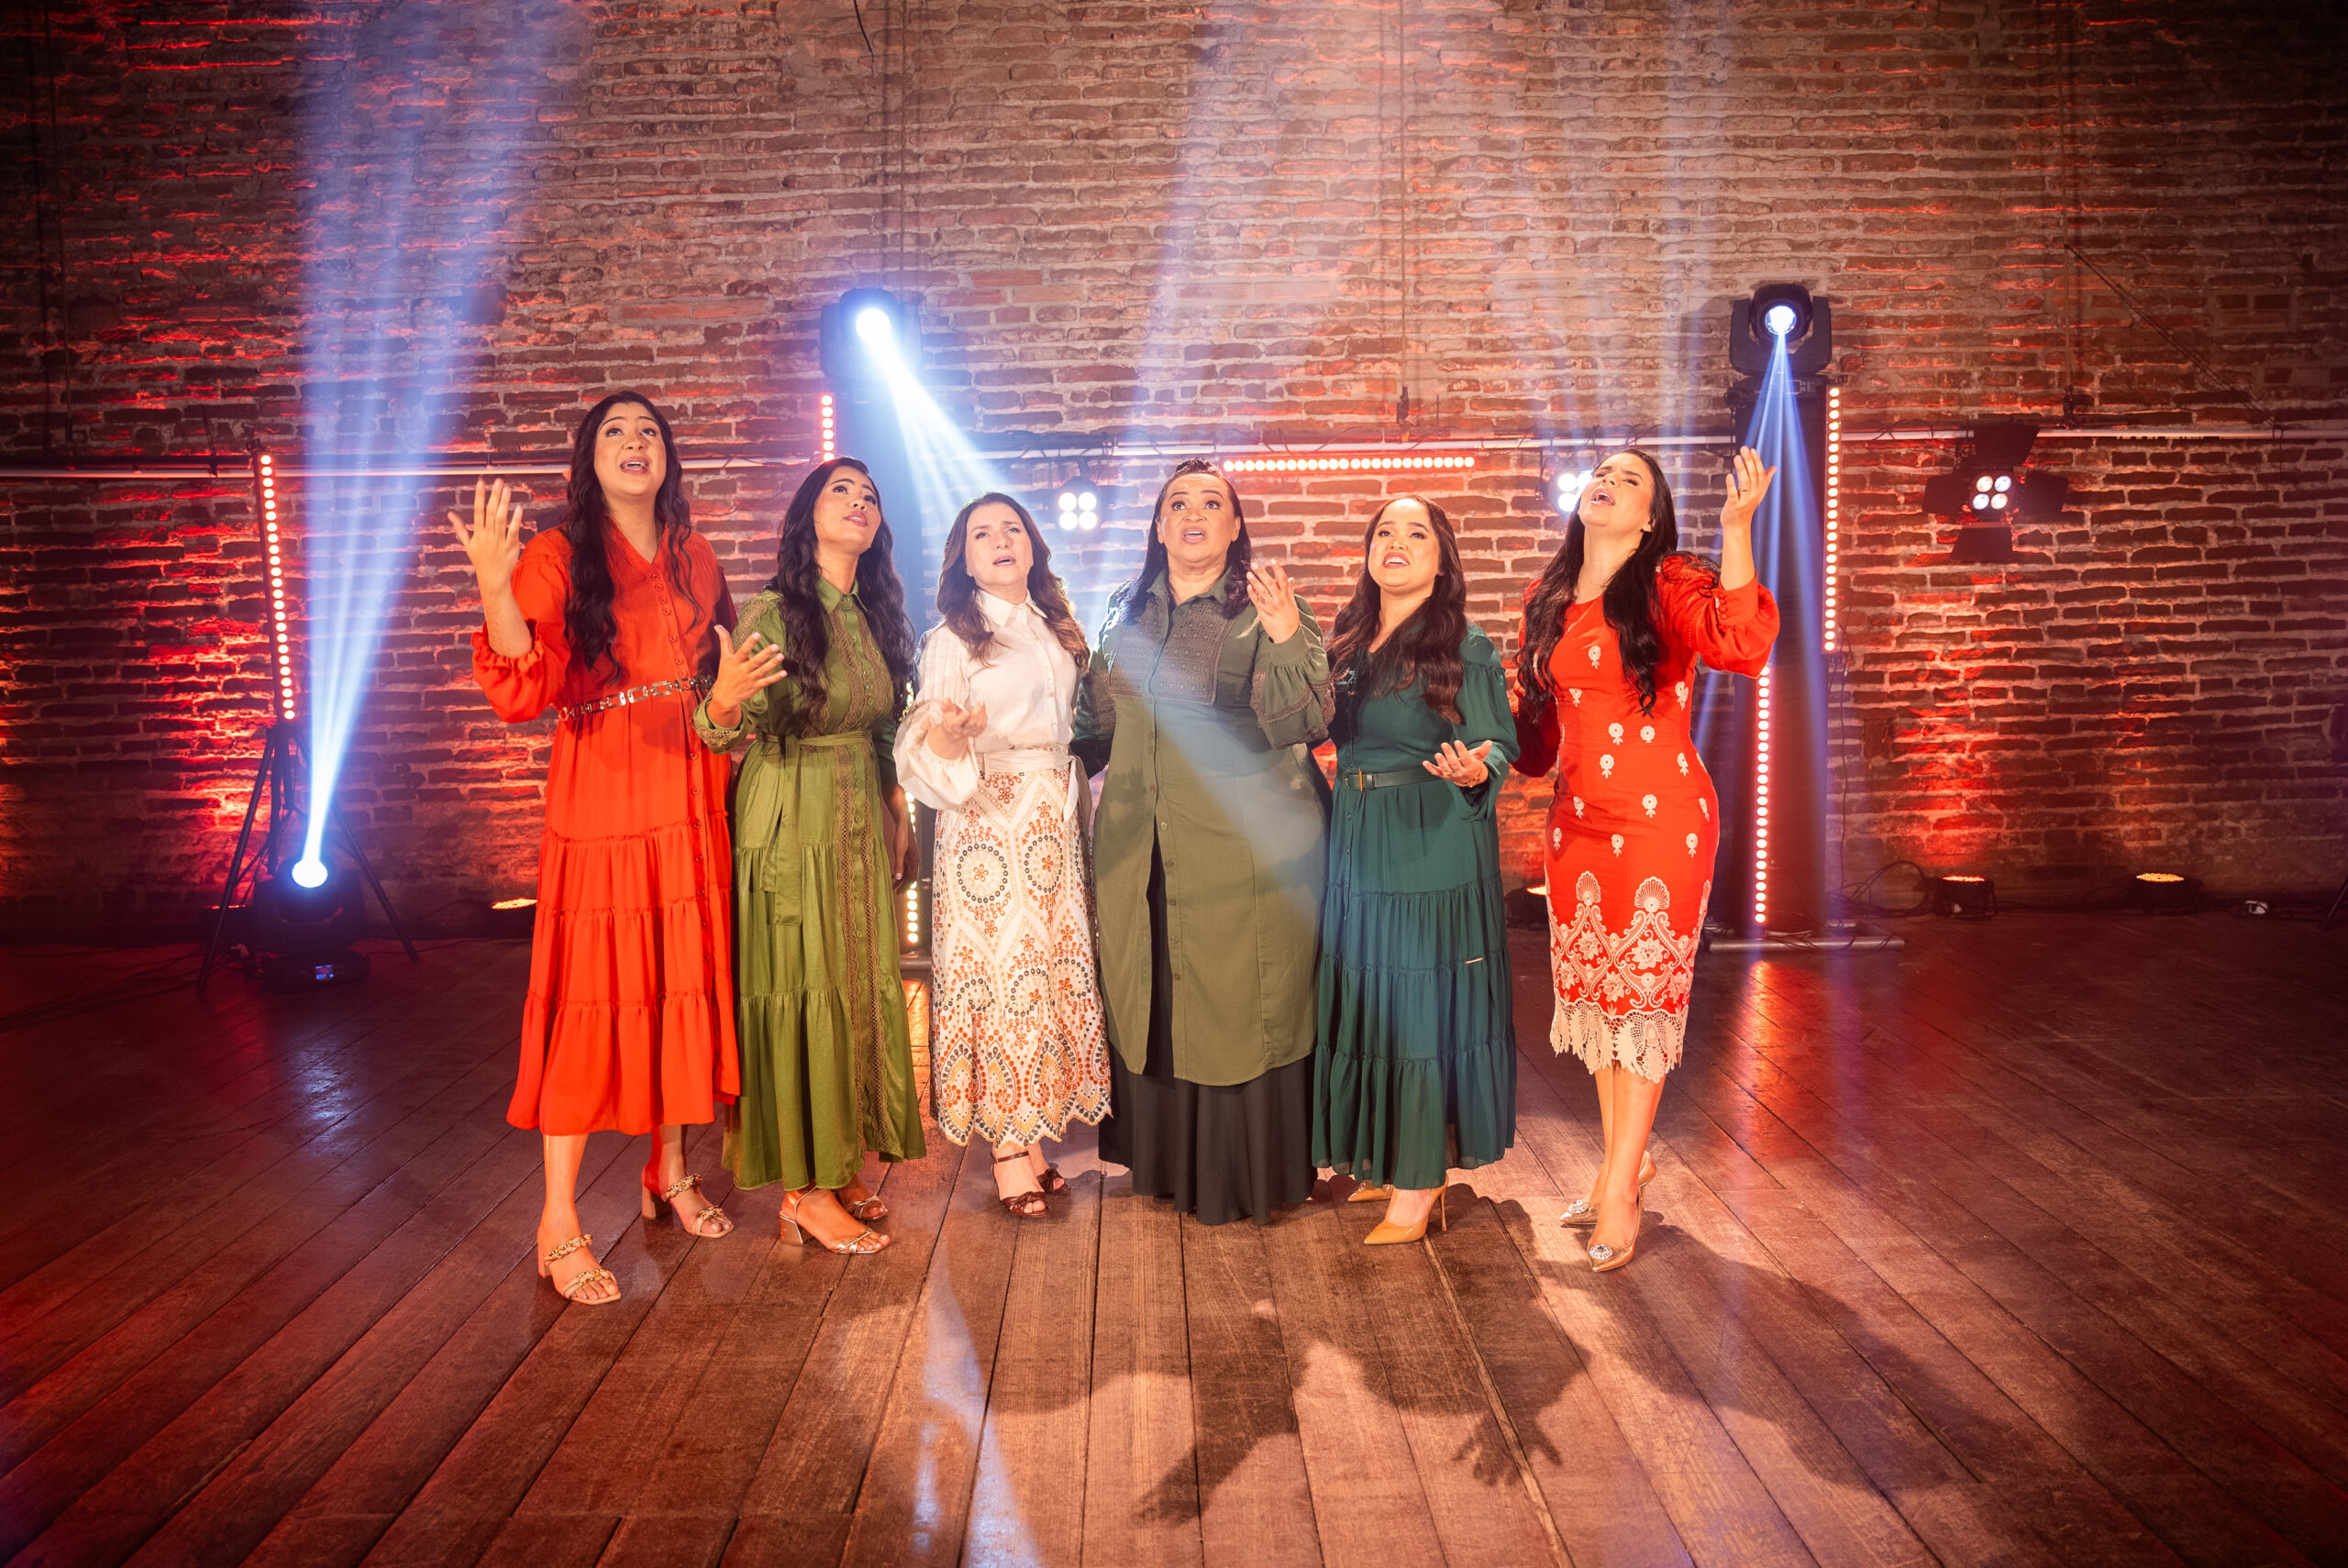  Miriam dos Passos lança “Meu Deus É Grande” em parceria com Cláudia Canção, Steffany, Eliã Oliveira, Rayanne Vanessa e Ruthe Dayanne 